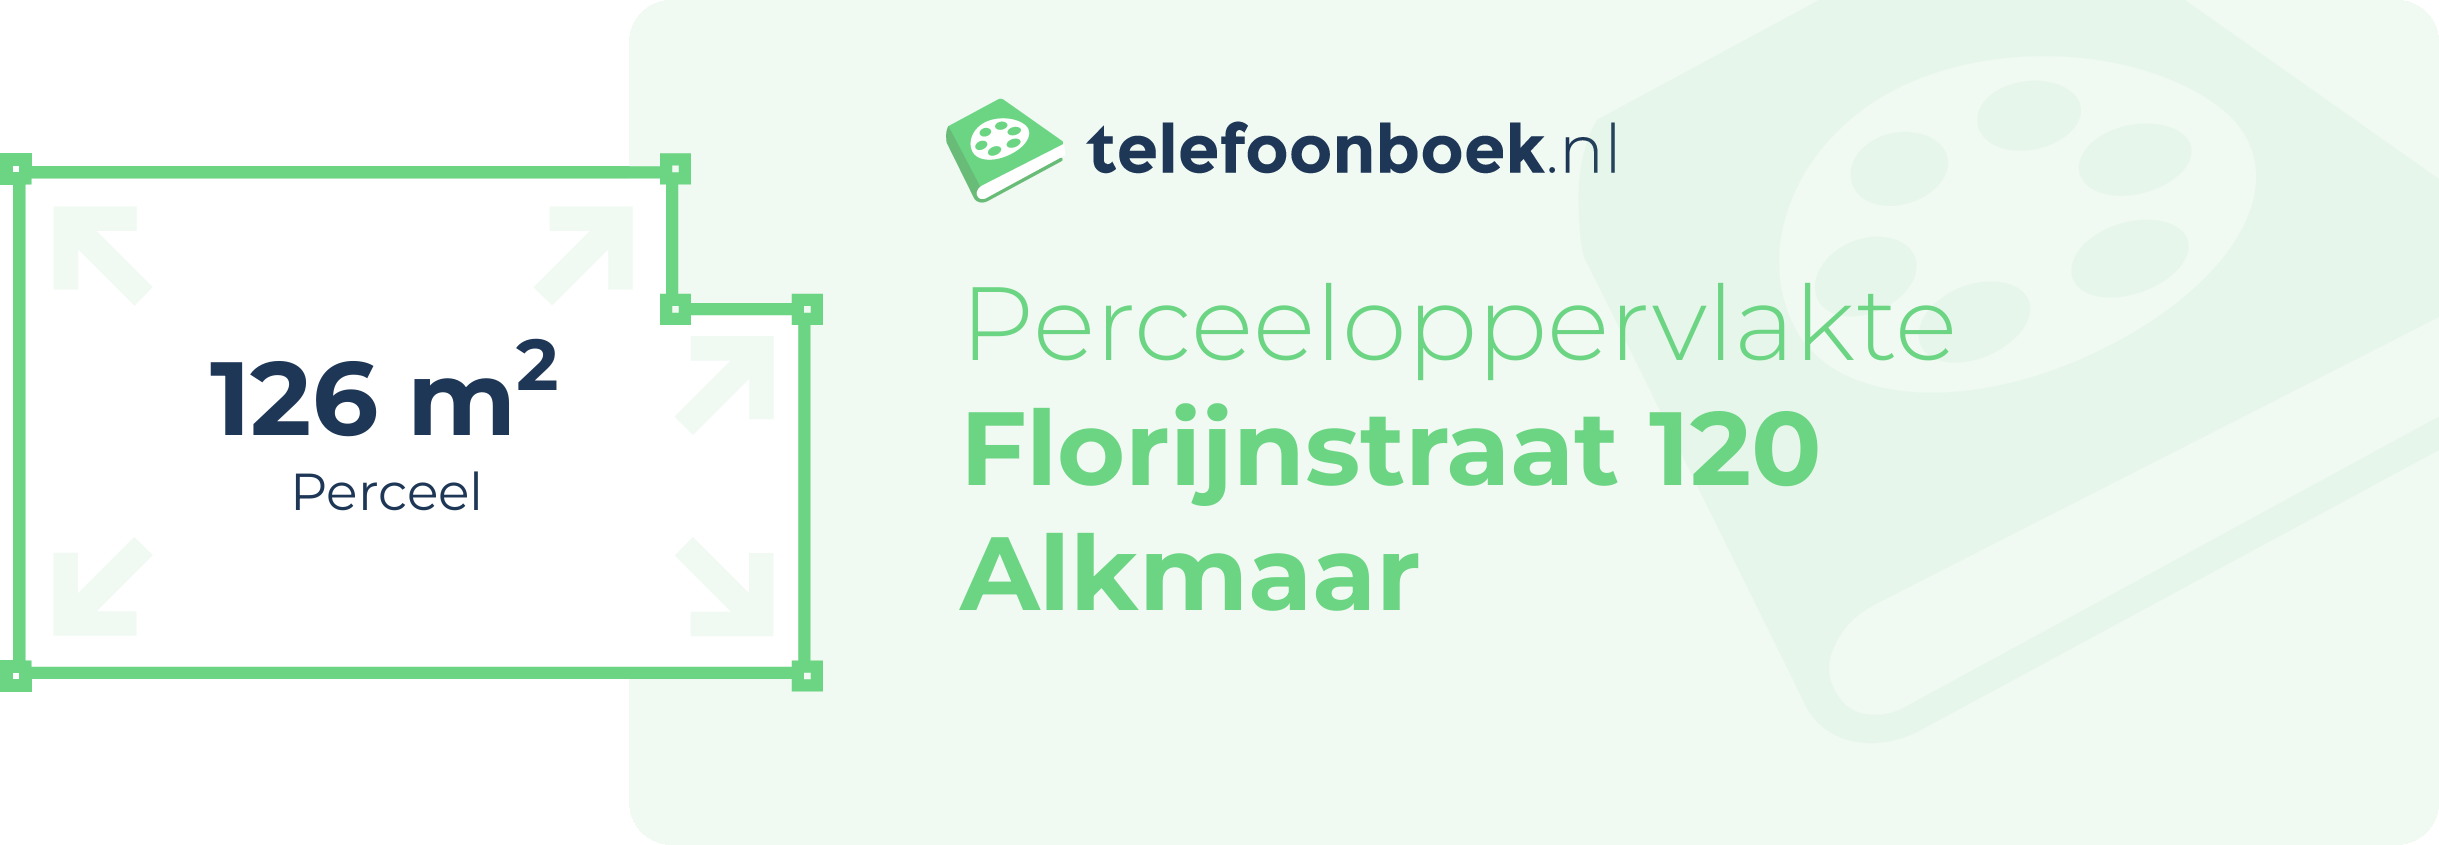 Perceeloppervlakte Florijnstraat 120 Alkmaar